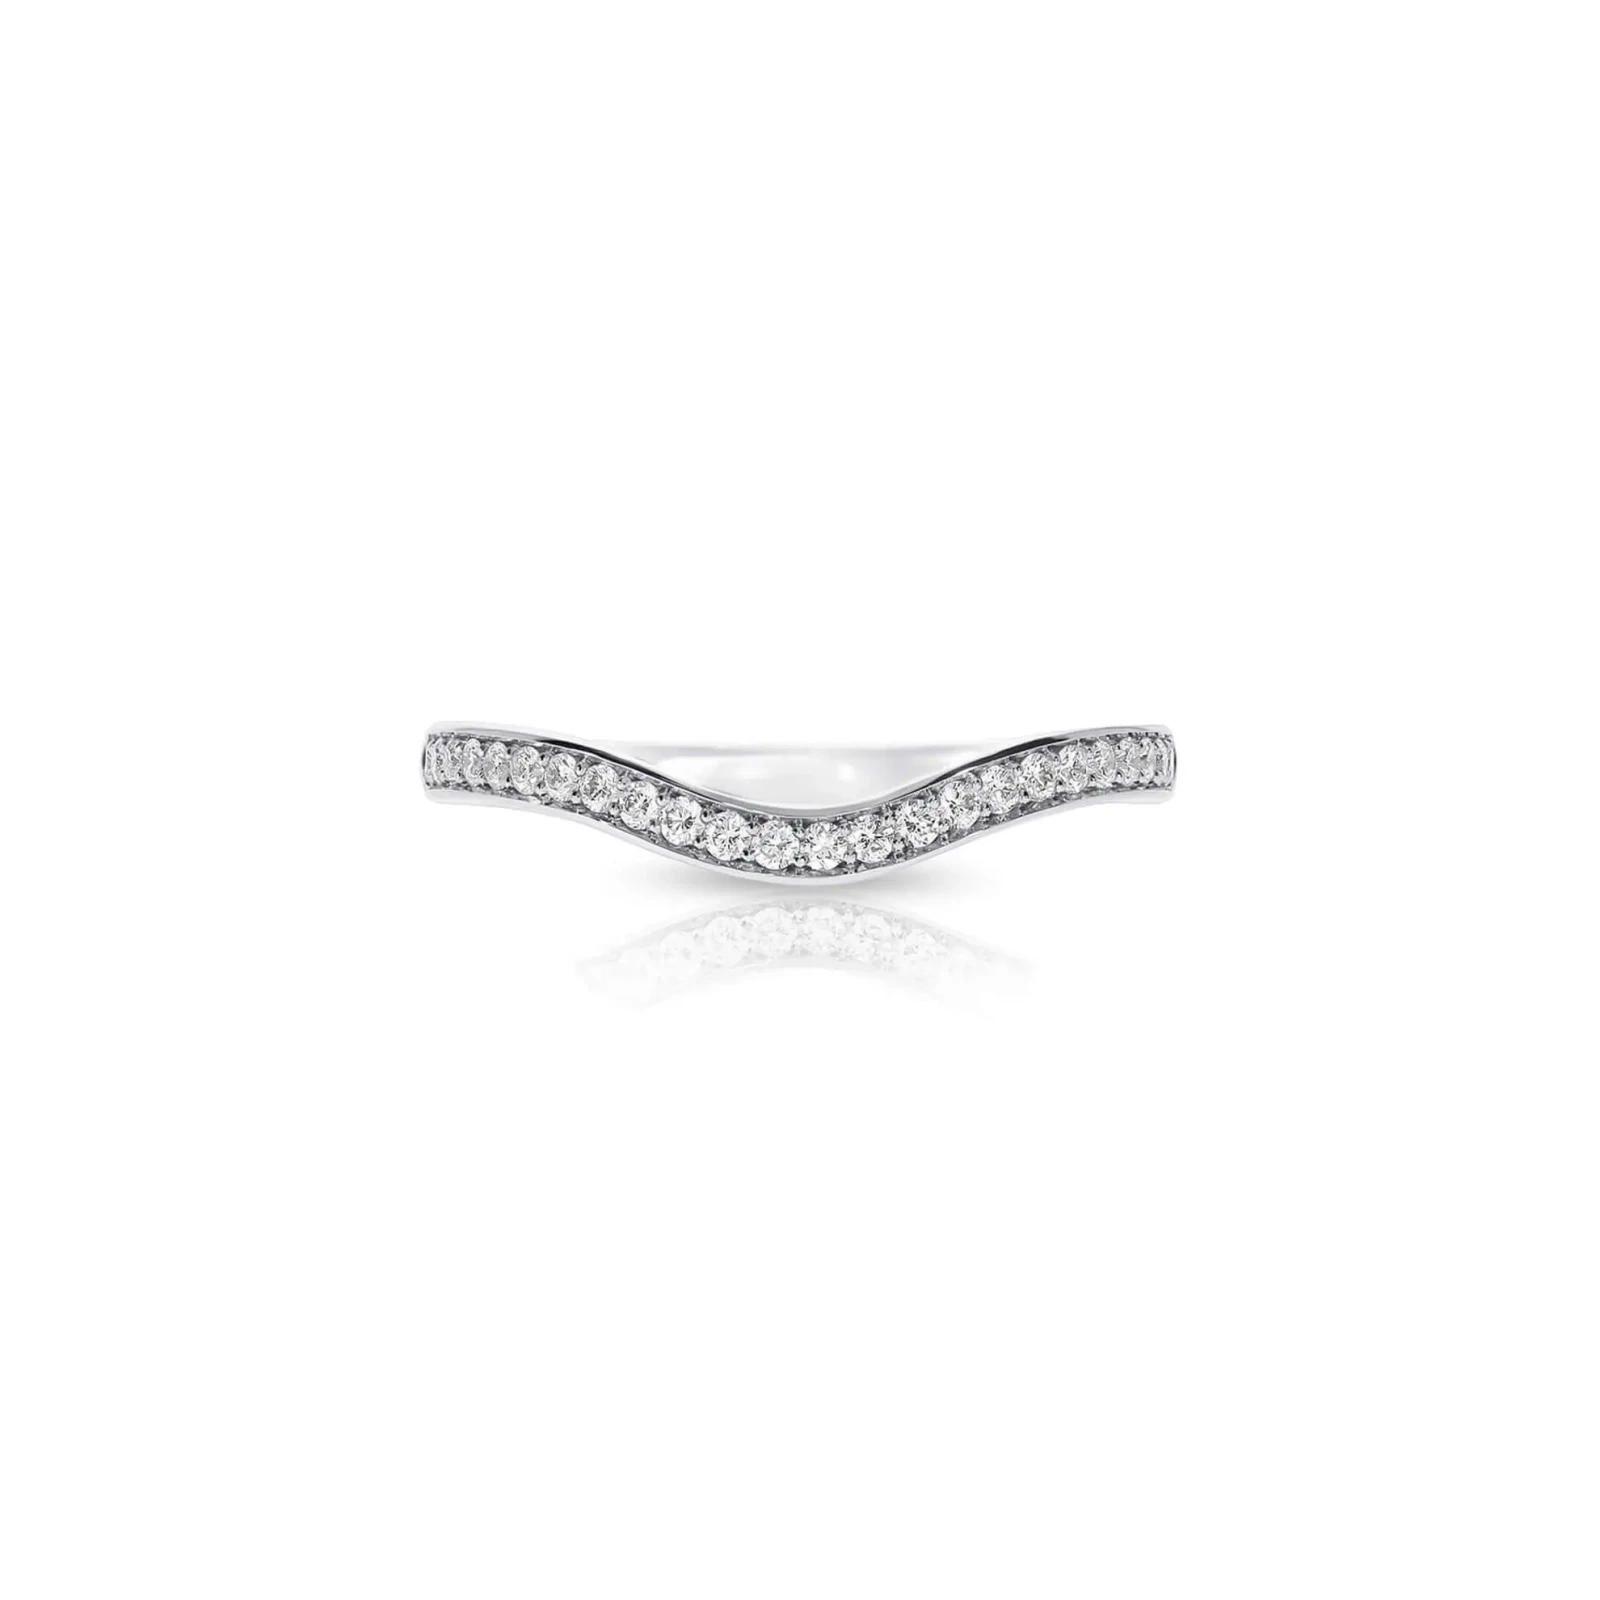 Contoured Pavé Set Diamond Eternity Wedding Ring